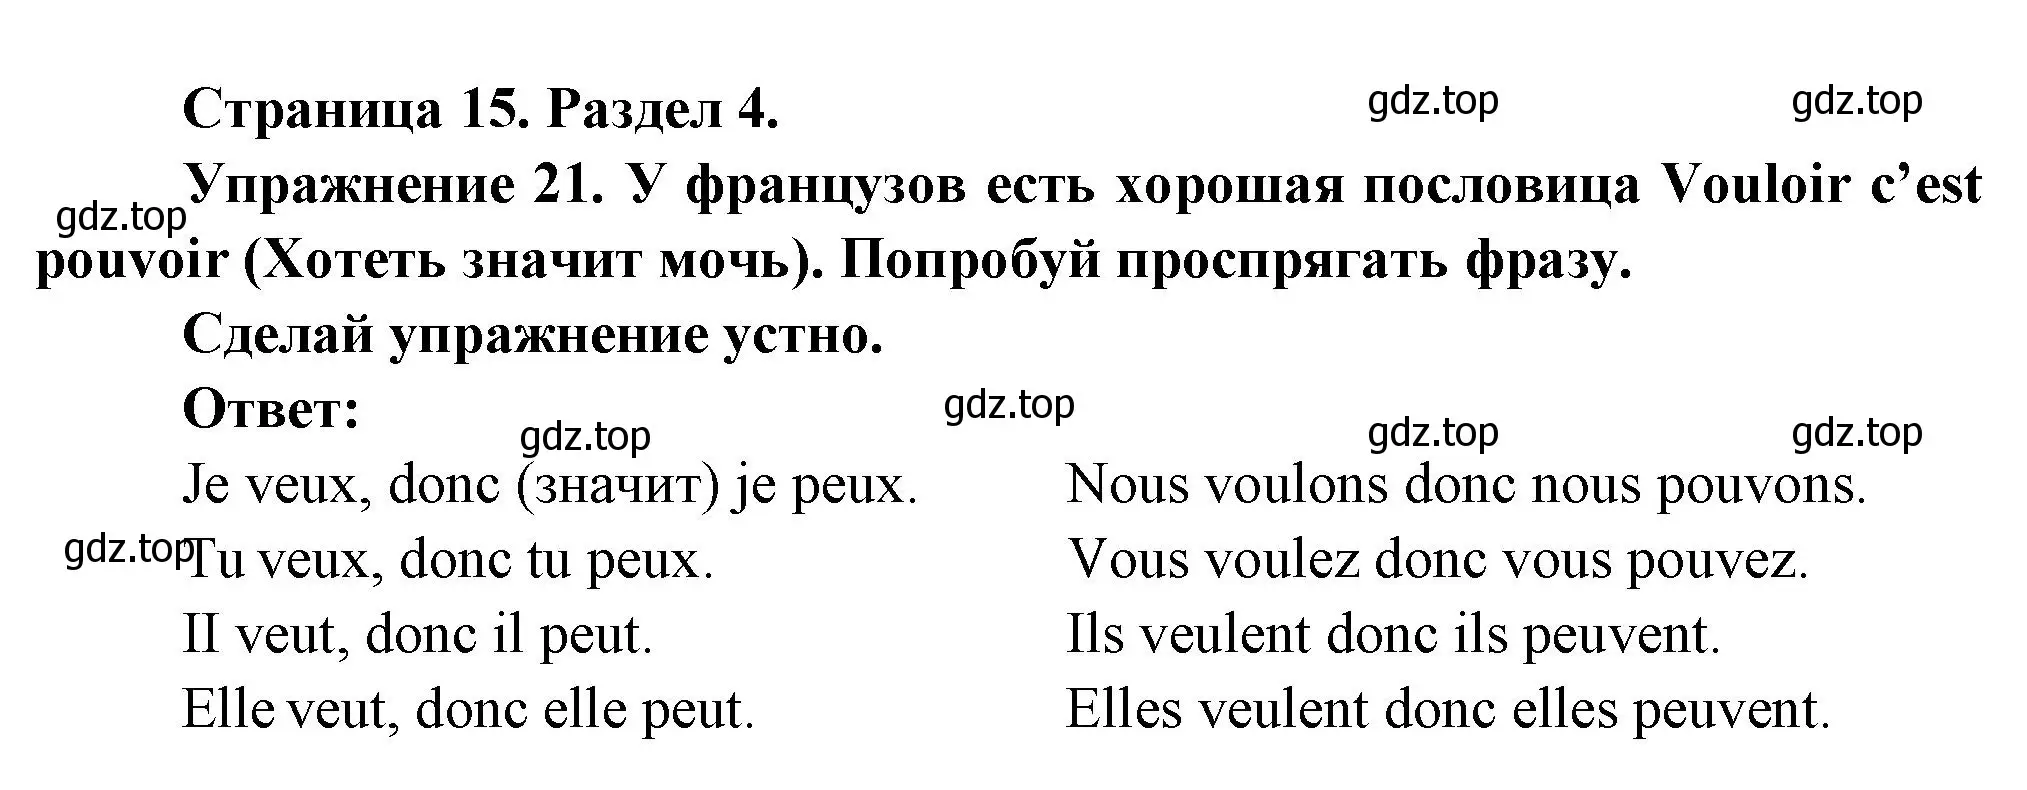 Решение номер 21 (страница 15) гдз по французскому языку 5 класс Береговская, Белосельская, учебник 2 часть